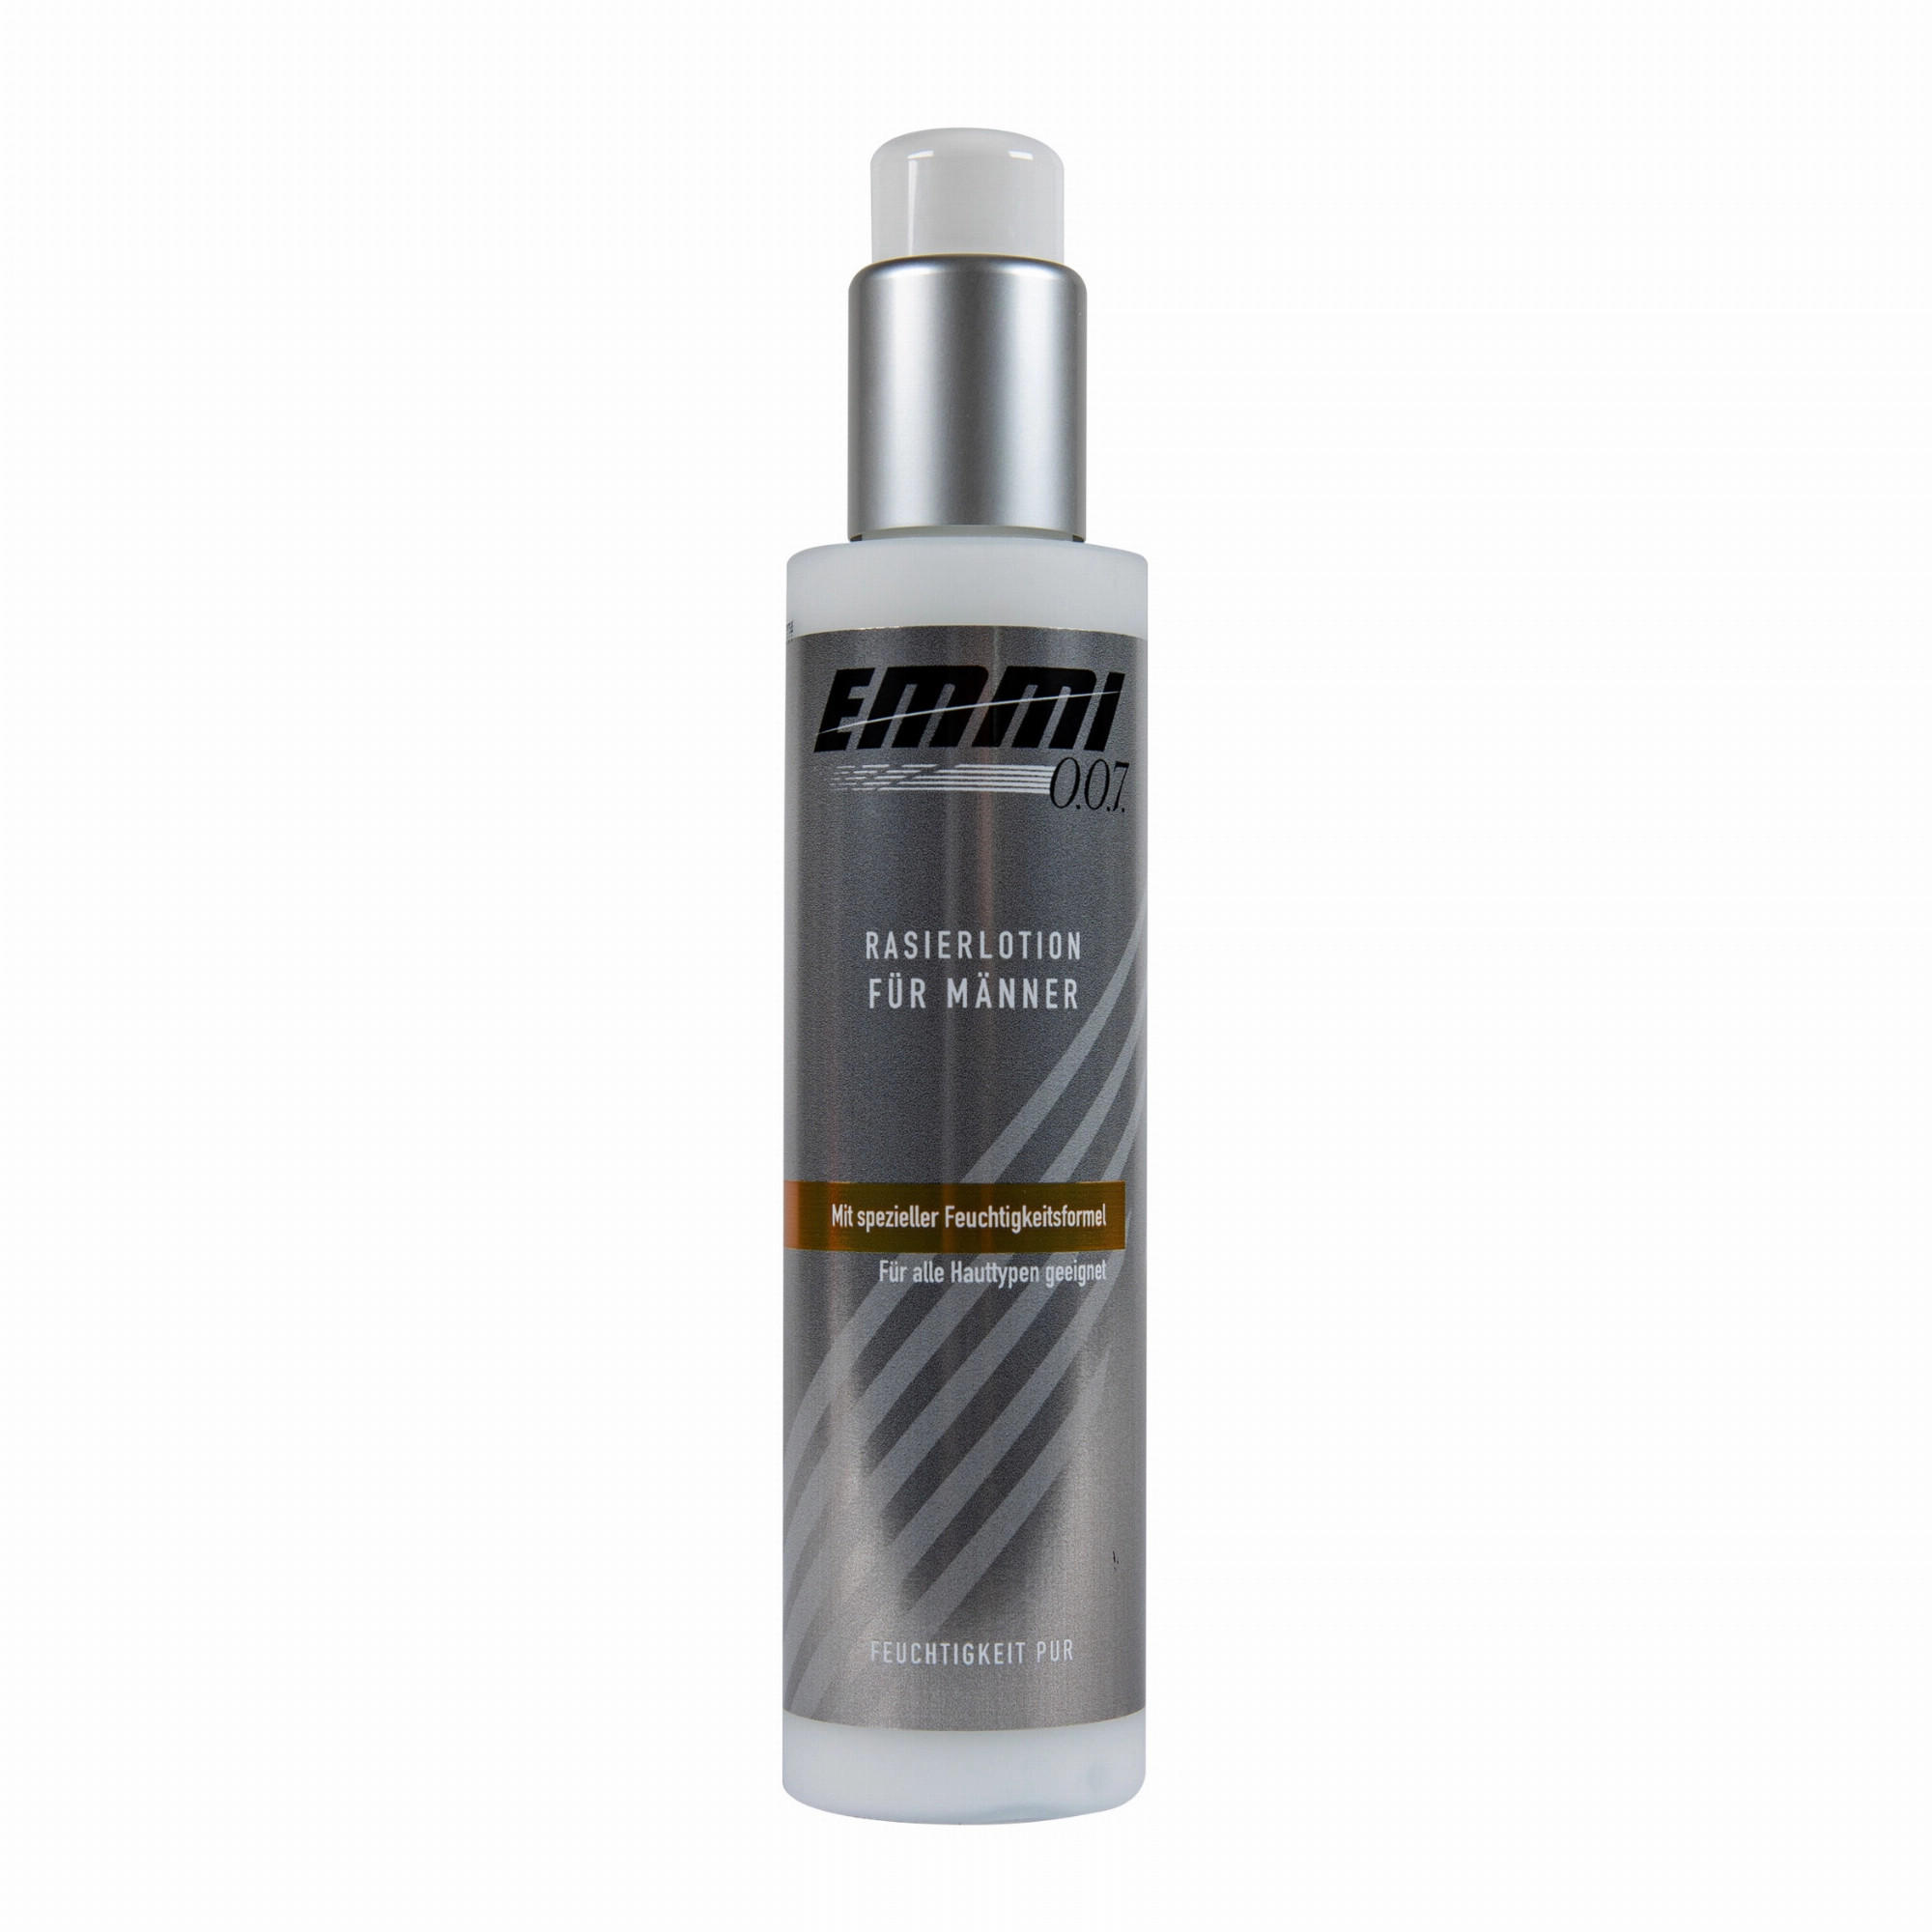 Emmi-0.0.7 Shaving Lotion for Men - 150ml